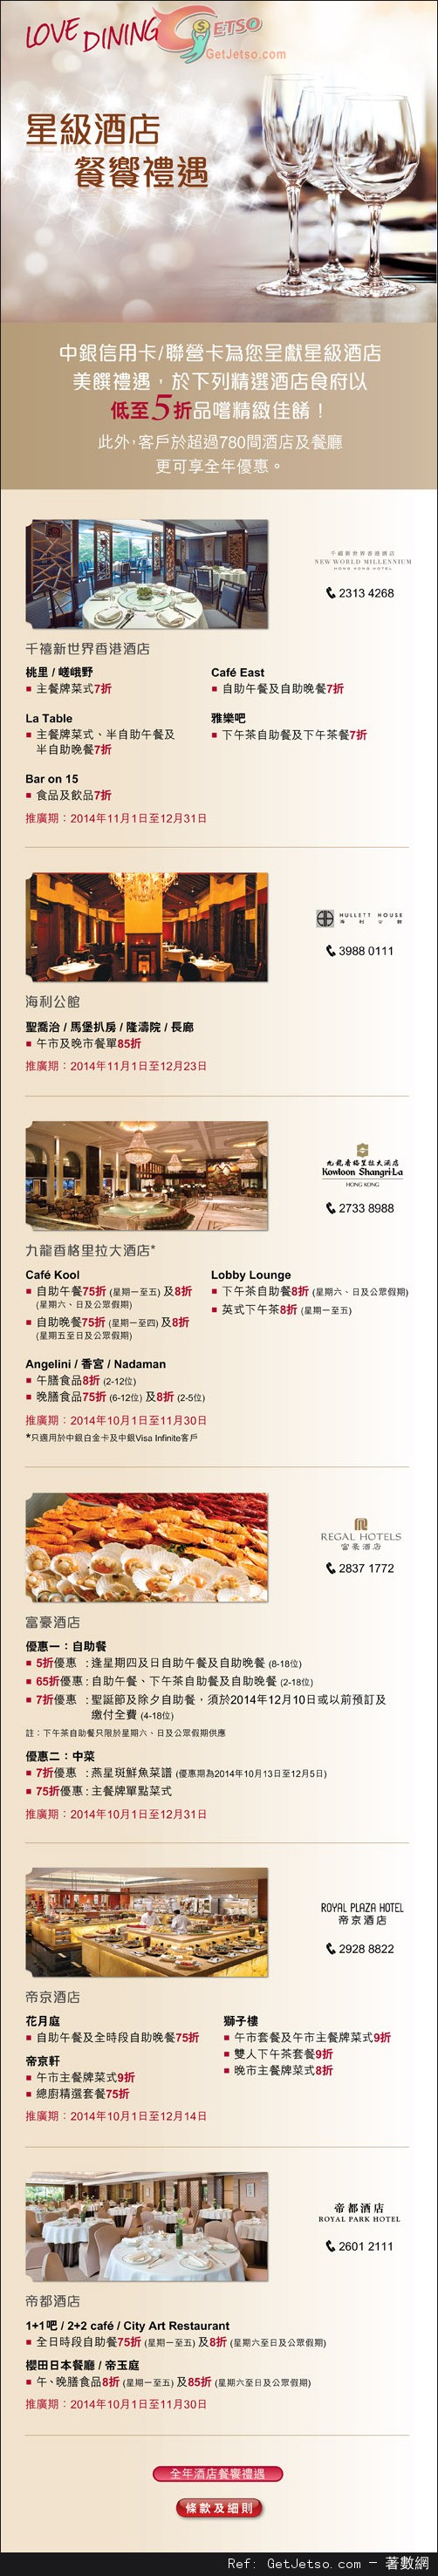 中銀信用卡享星級酒店餐饗禮遇低至半價優惠(至14年12月31日)圖片1